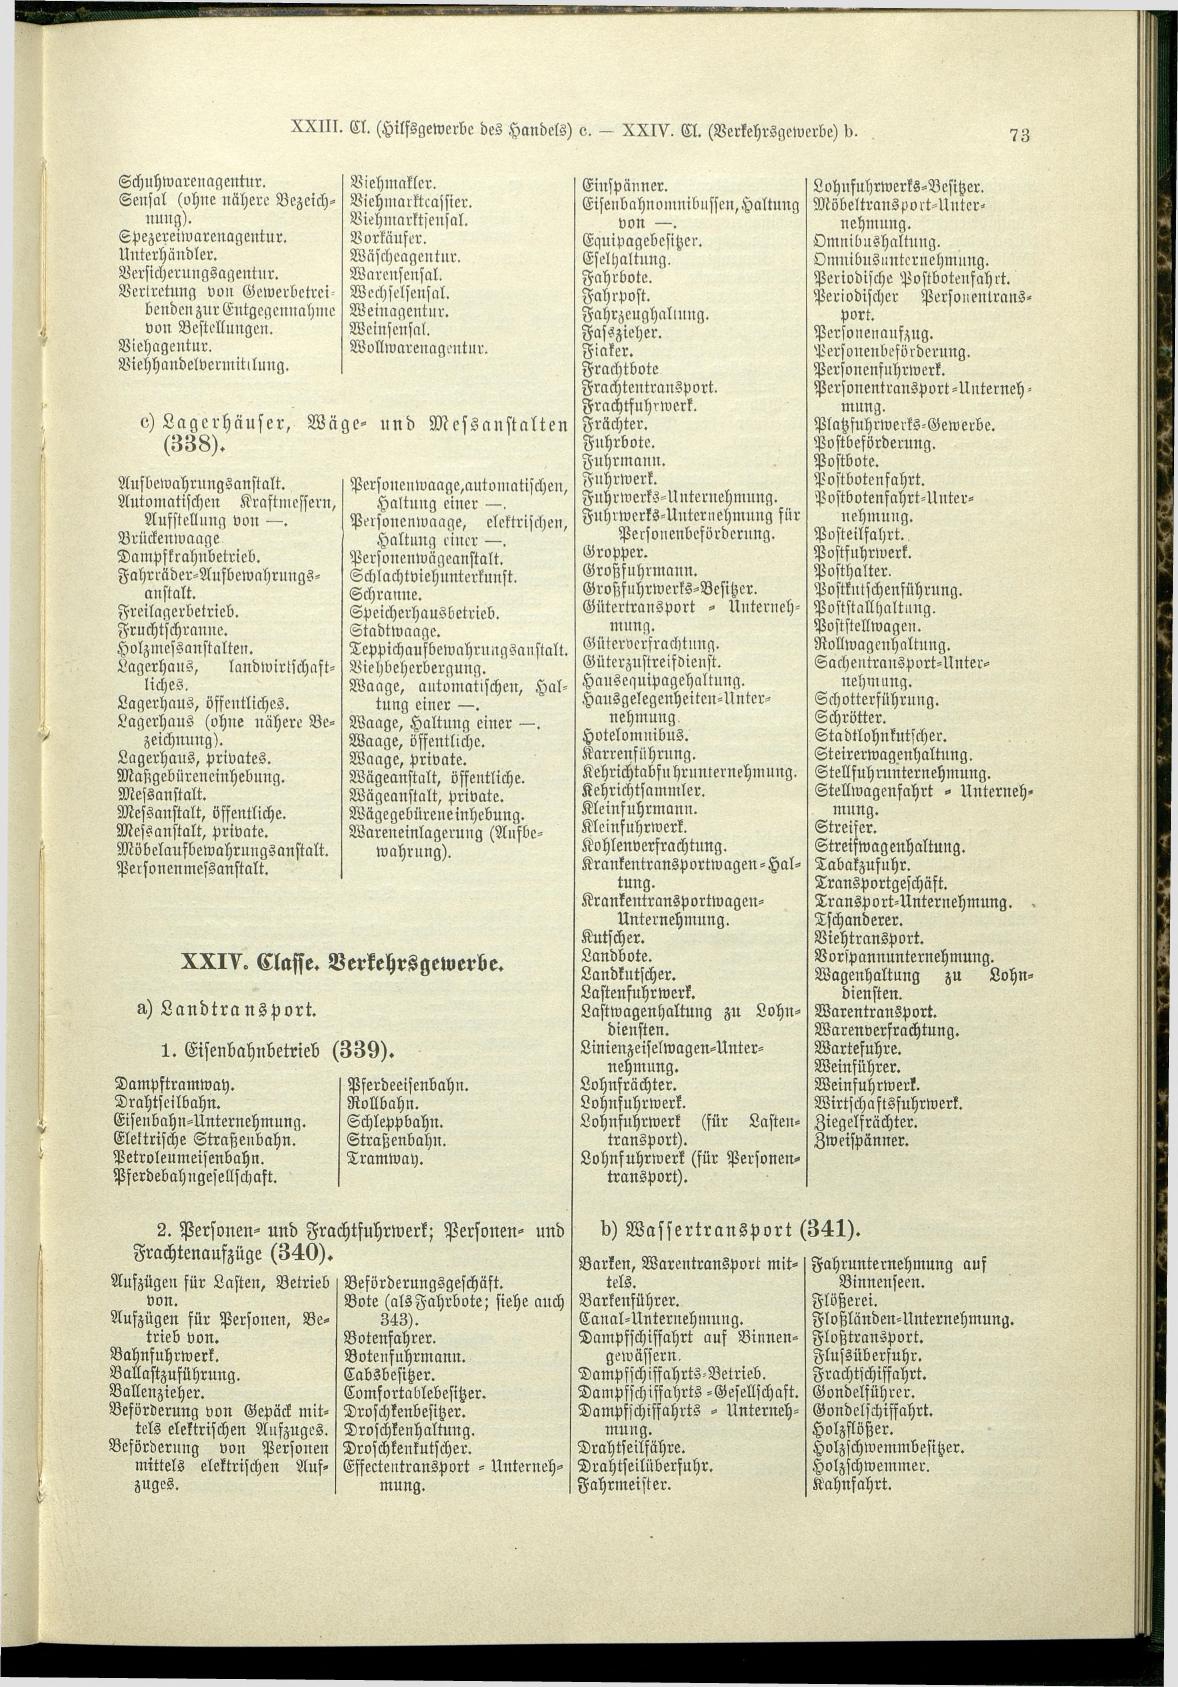 Verzeichnis der Gewerbe der im Reichsrathe vertretenen Königreiche und Länder 1900 - Seite 77